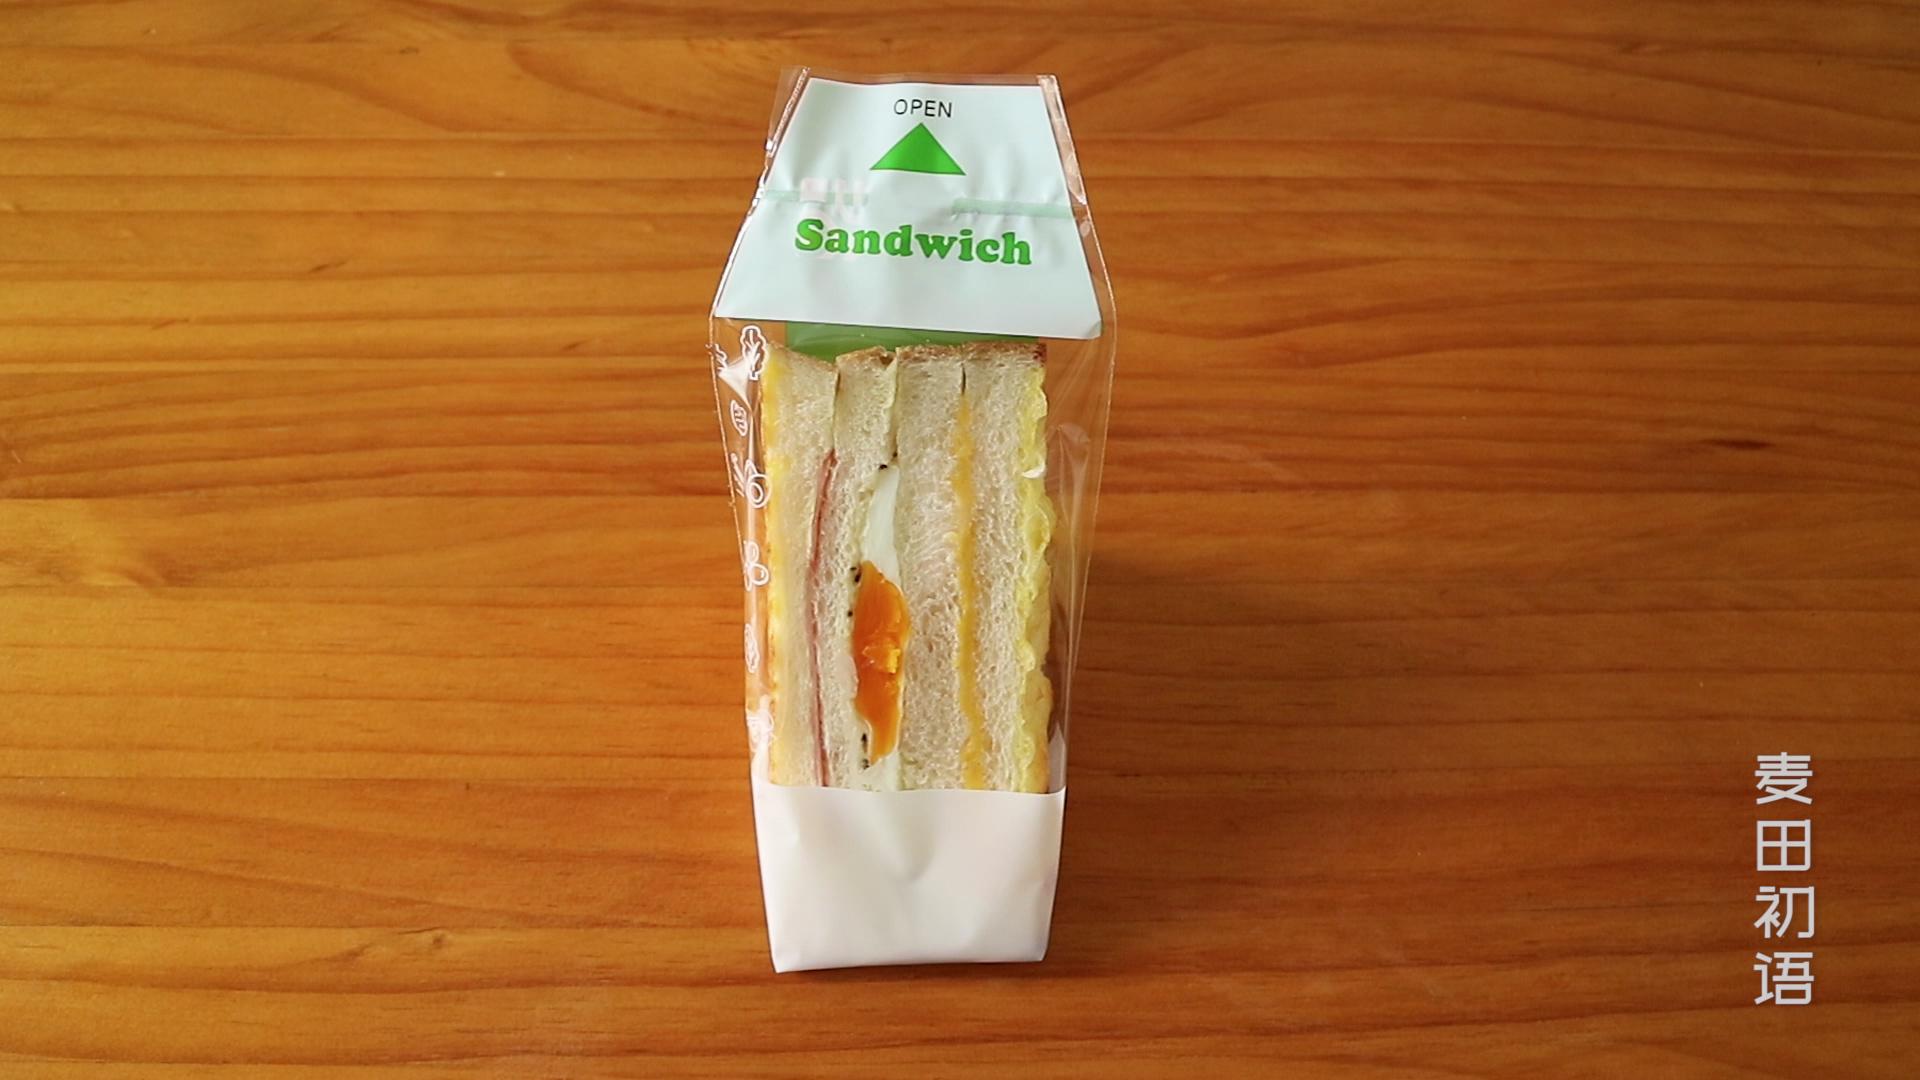 万物皆可夹的三明治，我选择了最经典的做法